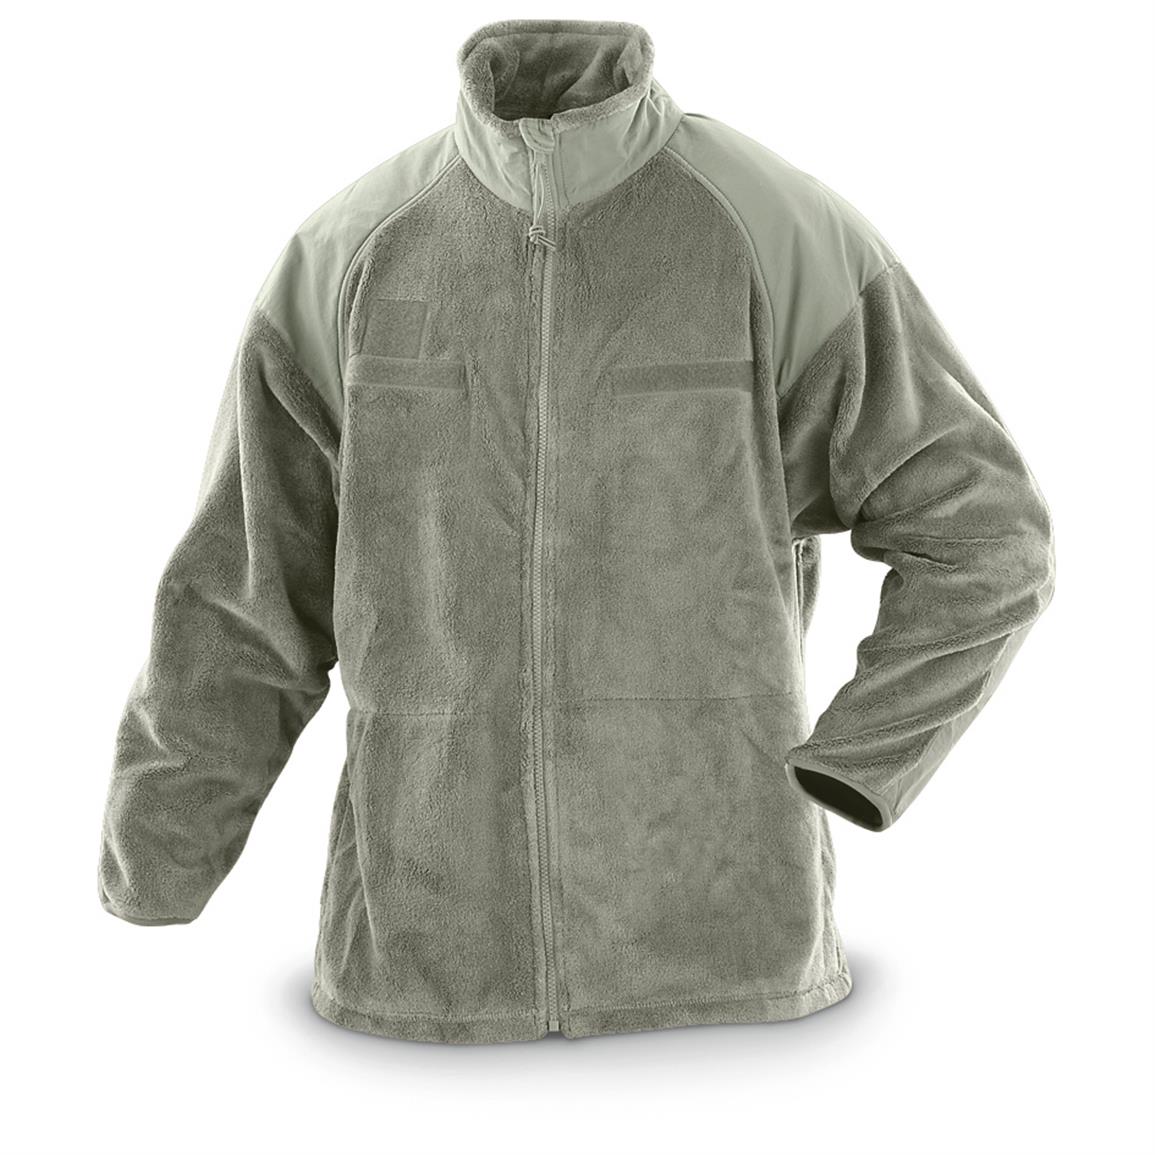 U.S. Military Surplus Gen3 Polartec Fleece Jacket